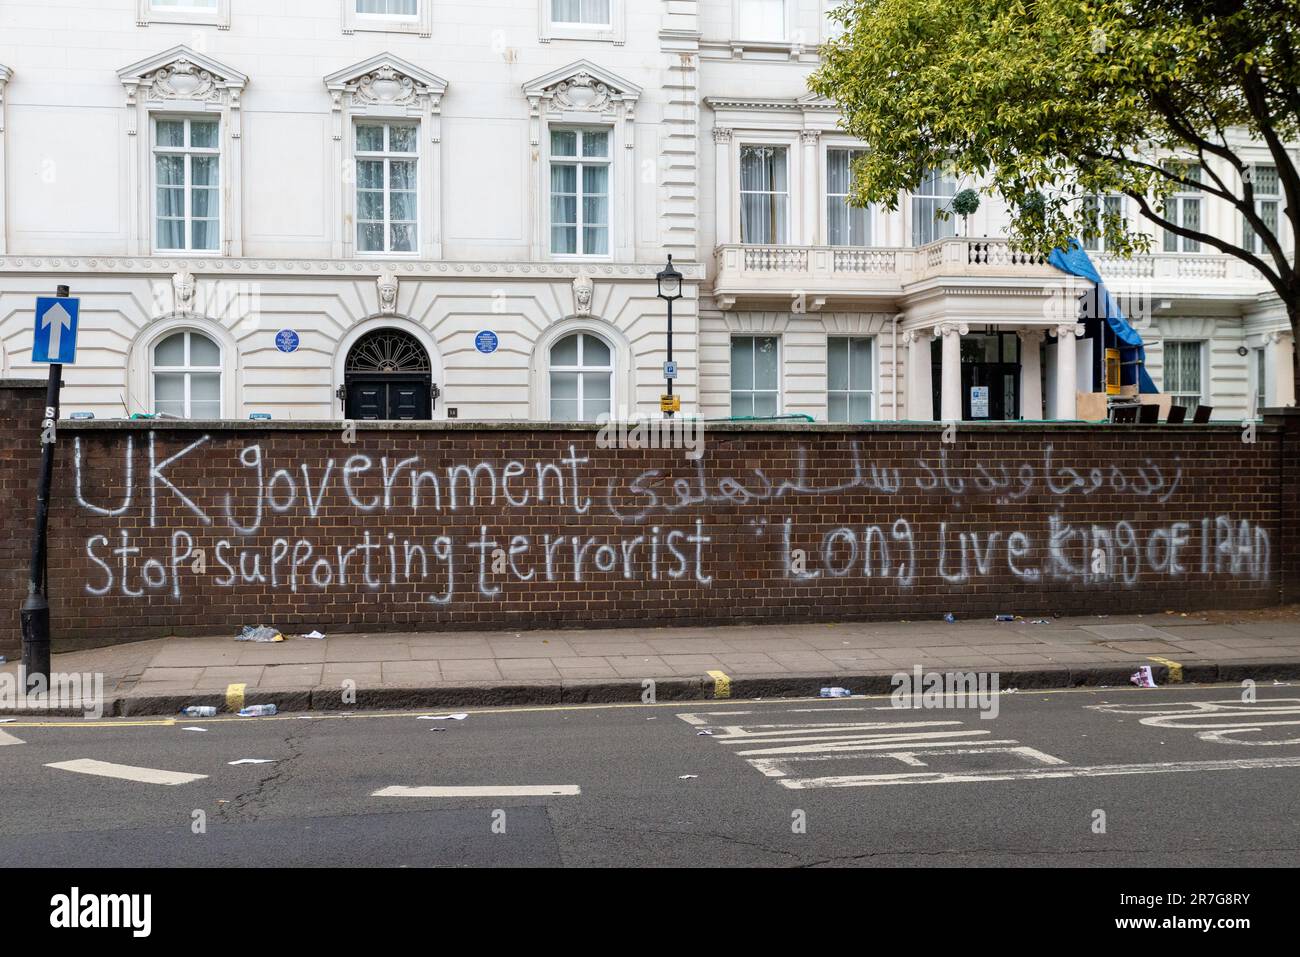 Graffiti à l'extérieur de l'ambassade de la République islamique d'Iran, Londres, protestant en faveur du peuple kurde. Le gouvernement britannique cesse de soutenir le terrorisme Banque D'Images